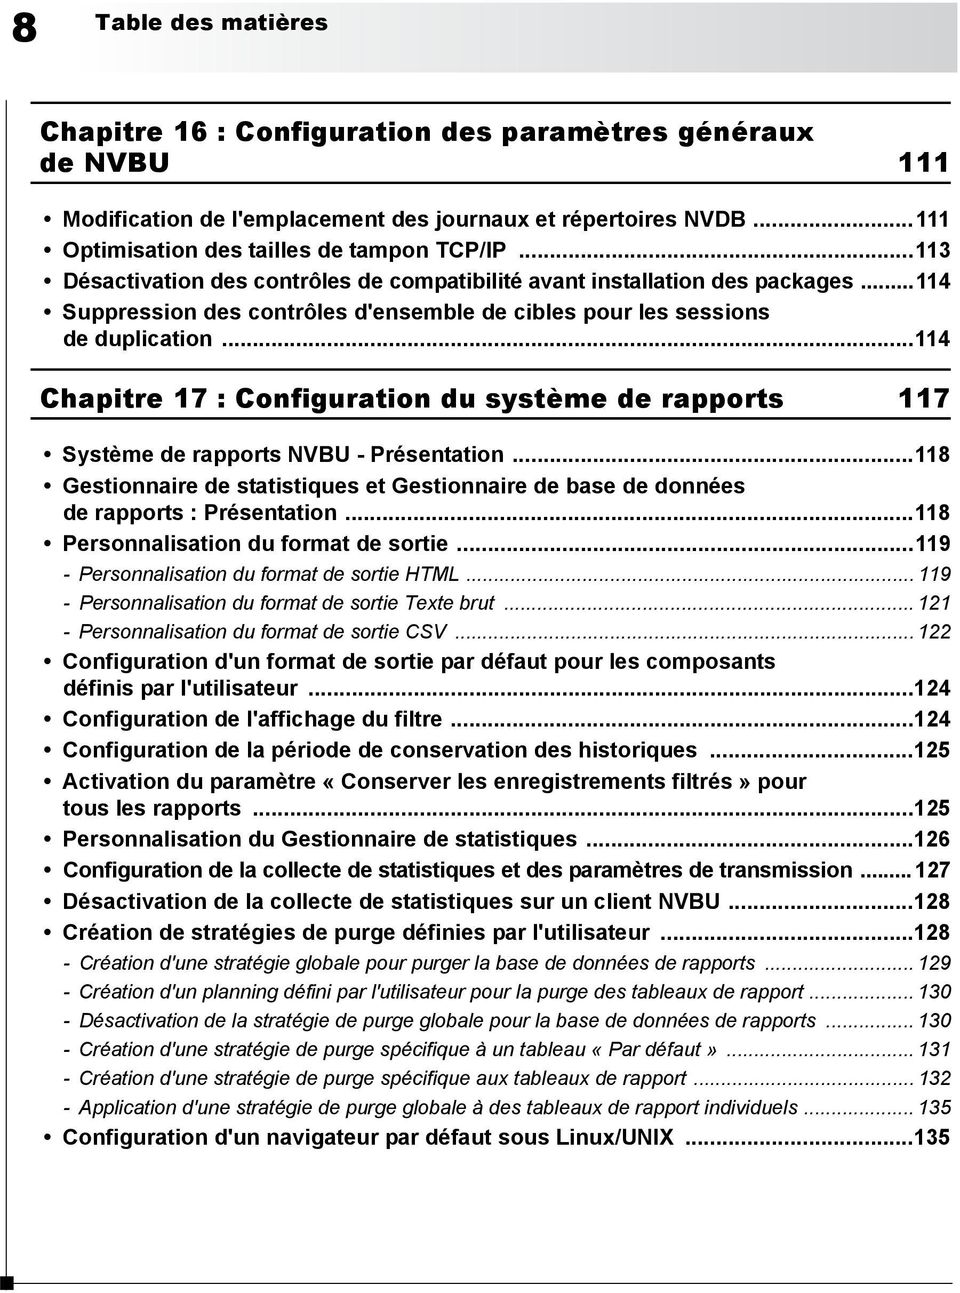 ..114 Chapitre 17 : Configuration du système de rapports 117 Système de rapports NVBU - Présentation...118 Gestionnaire de statistiques et Gestionnaire de base de données de rapports : Présentation.